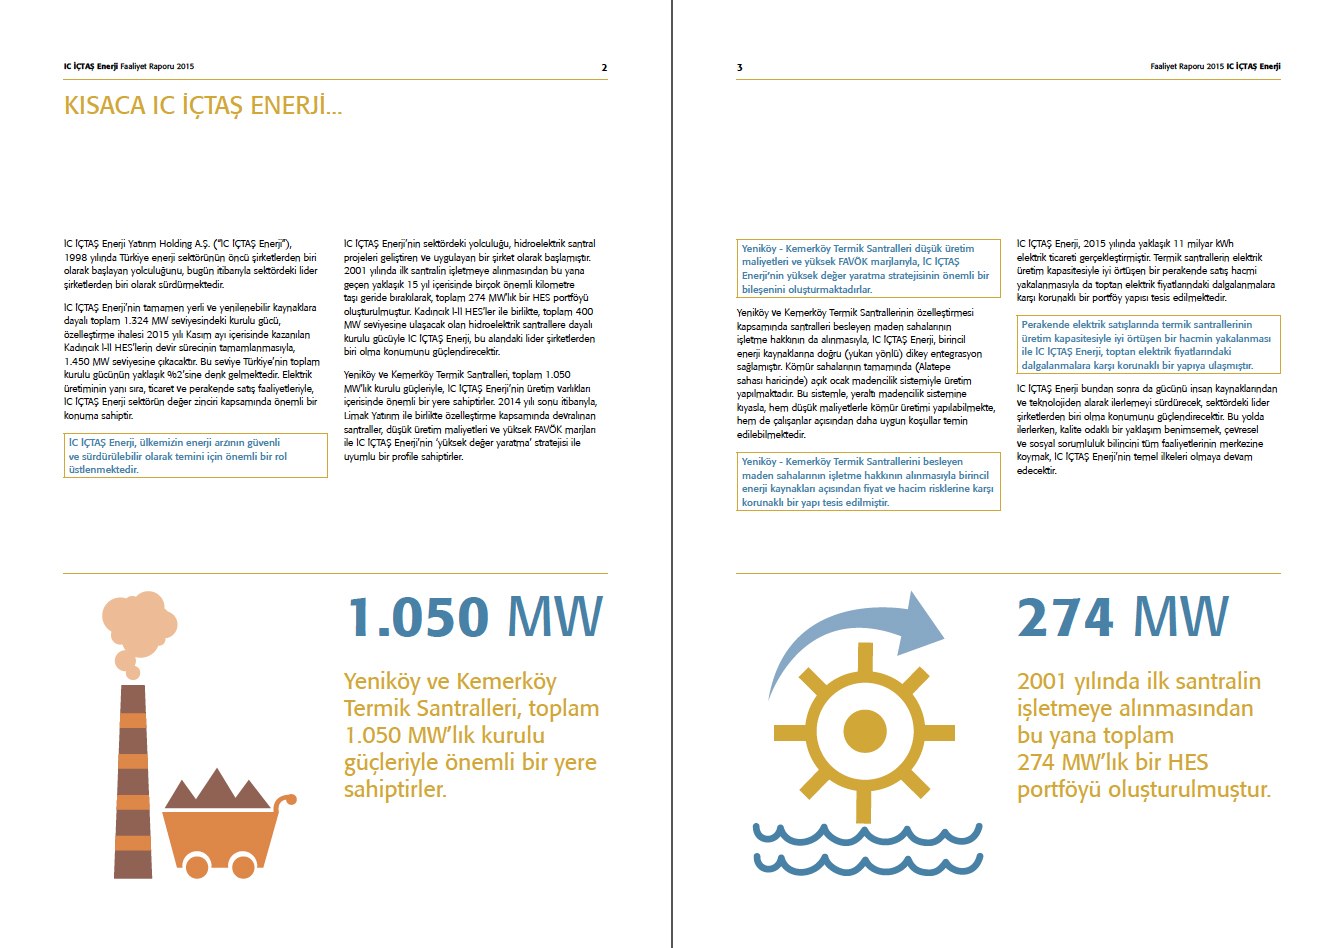 IC İÇTAŞ ENERJİ / 2015 Faaliyet Raporu / 2015 Annual Report